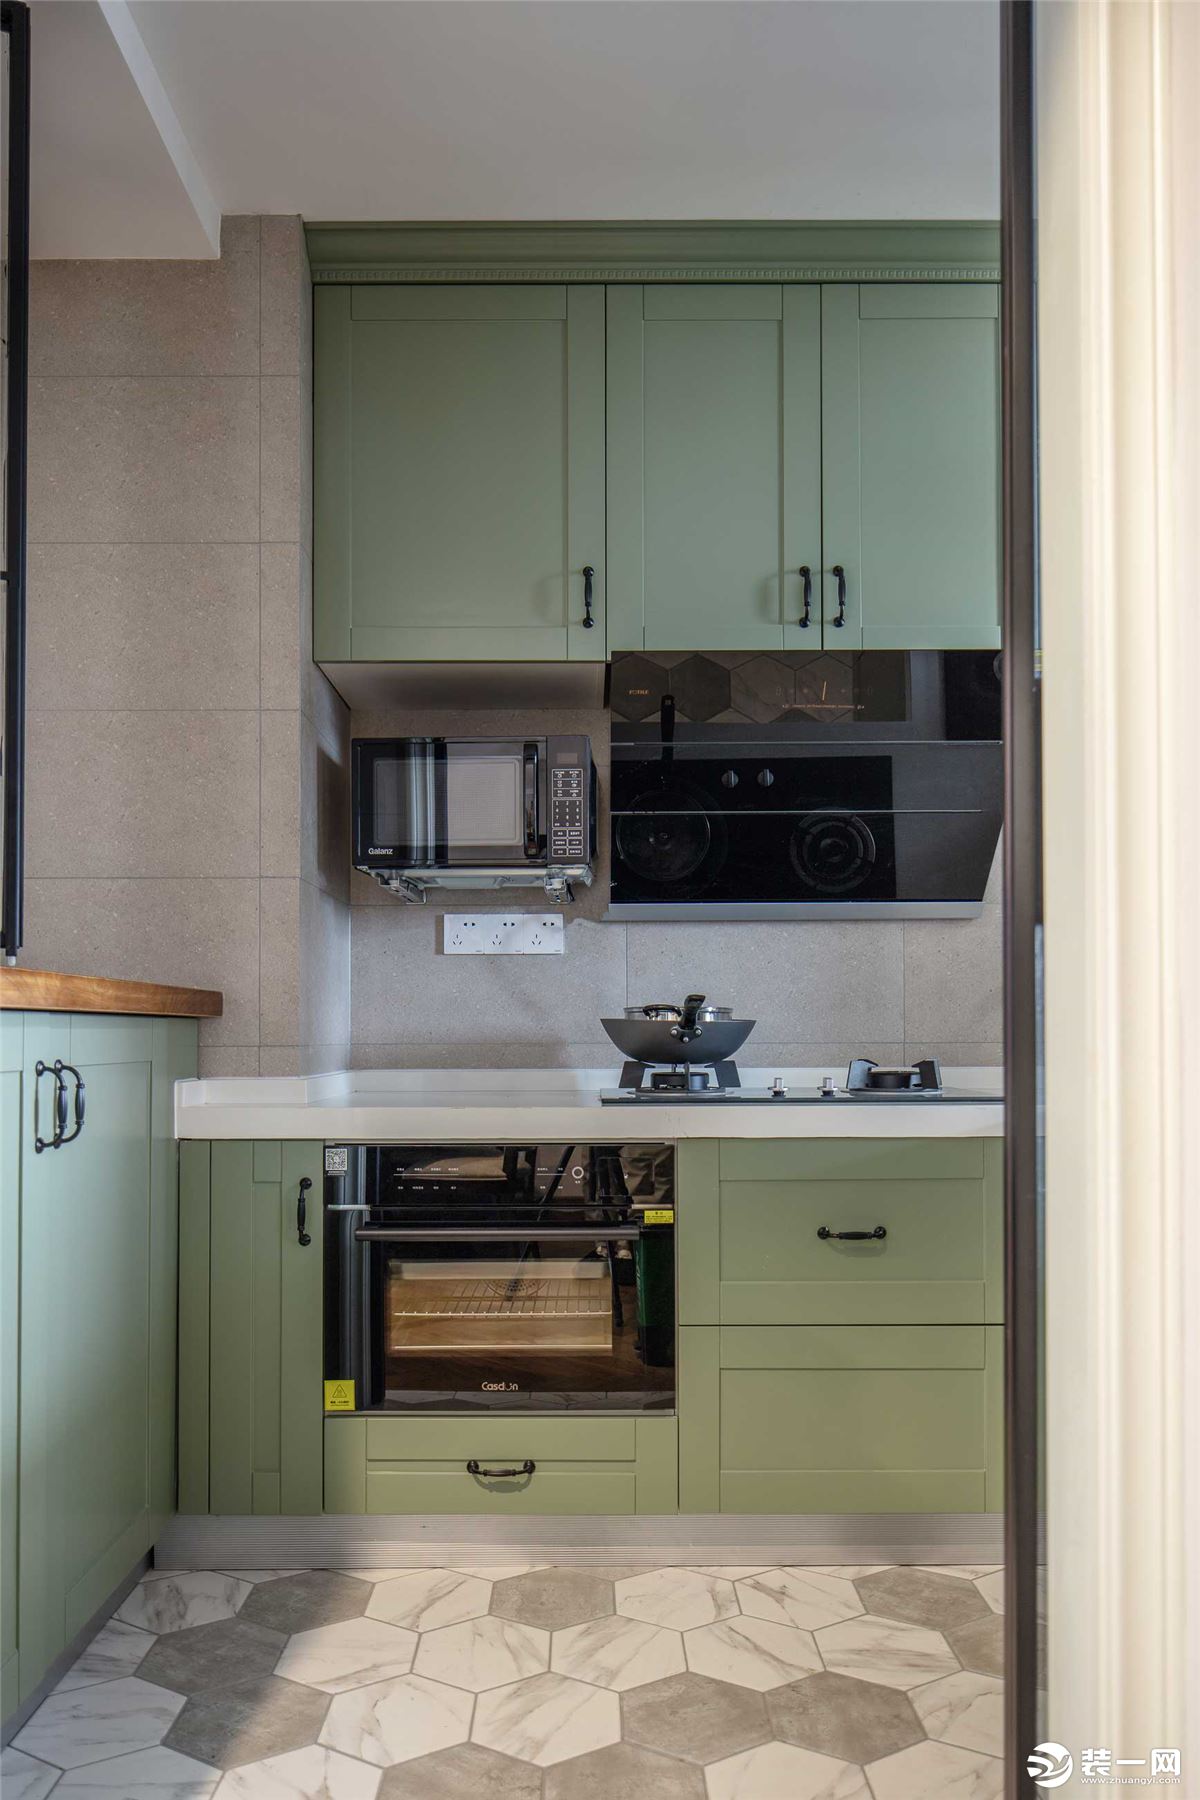 厨房将主空间的那抹浅绿色引入，流淌着一抹灵动清新的艺术韵味，让烹饪的心情随之愉悦。